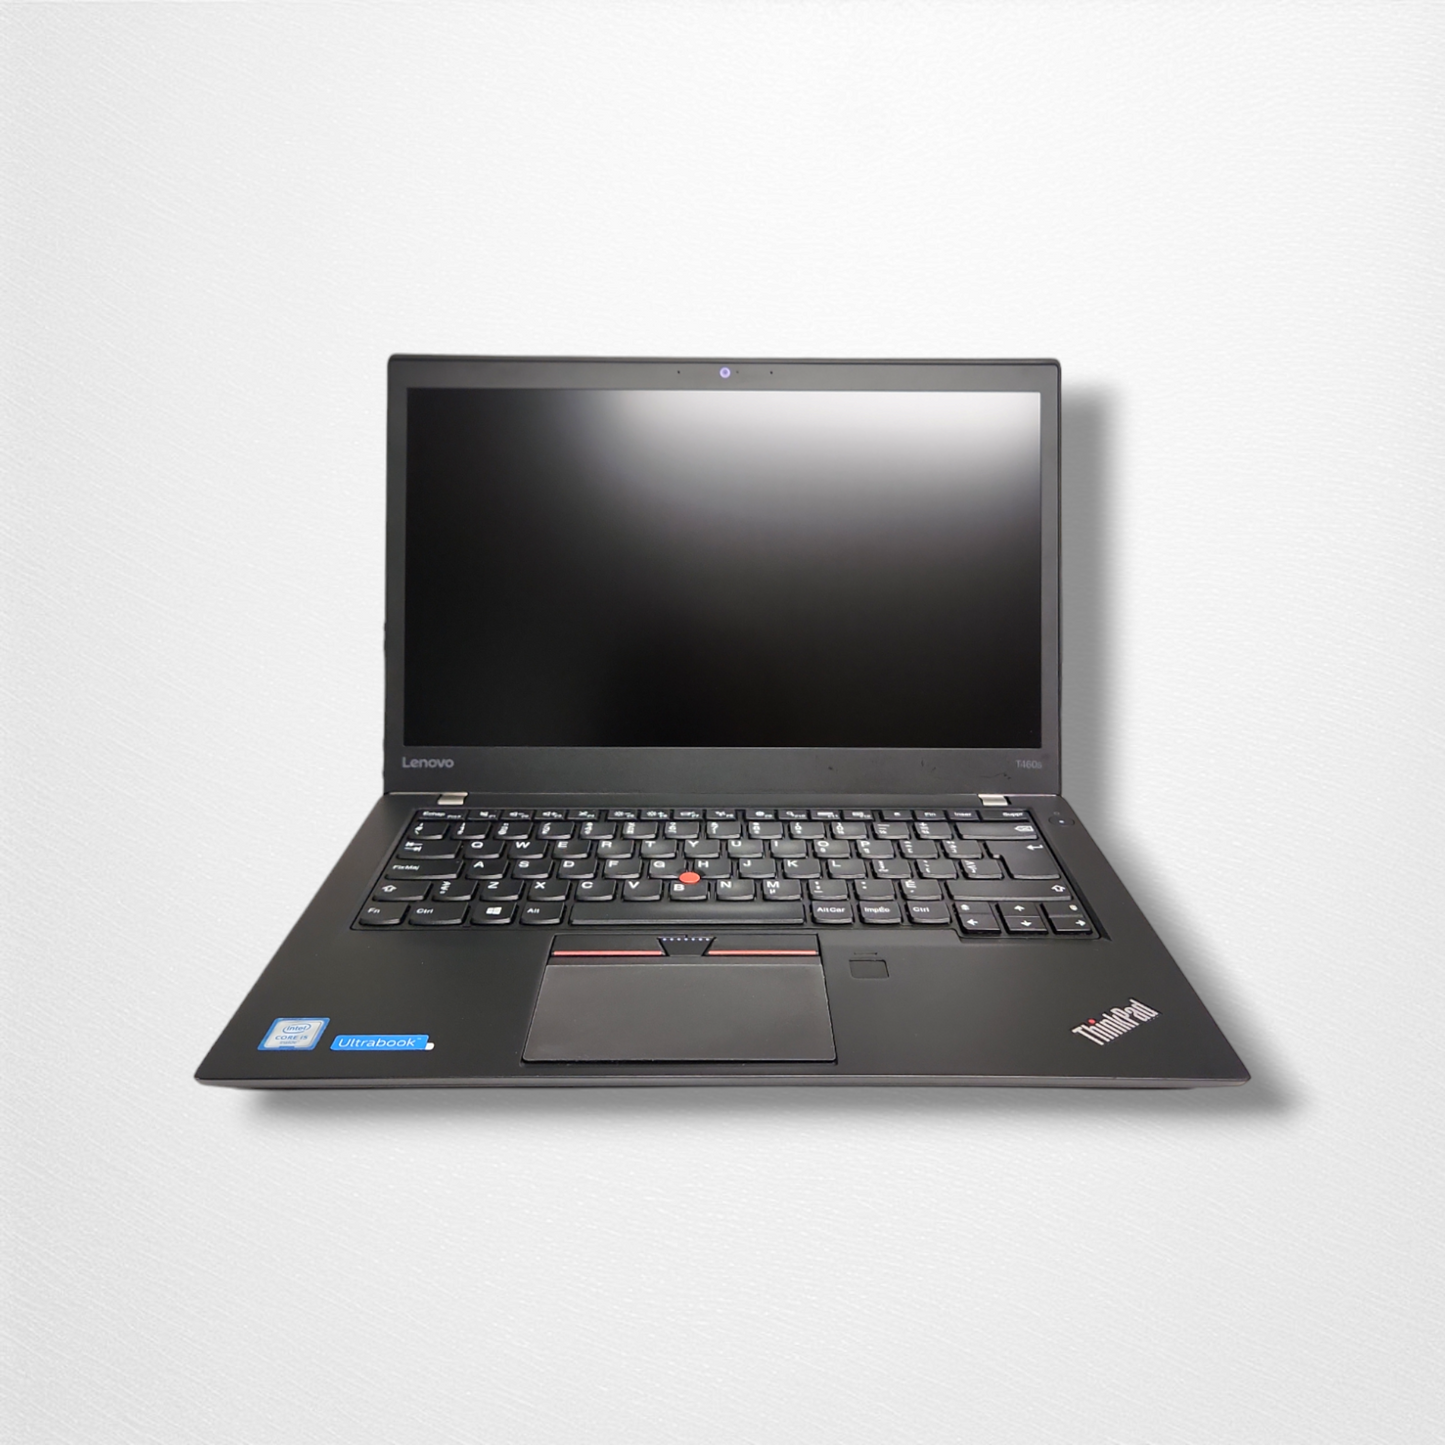 Lenovo Thinkpad T460s